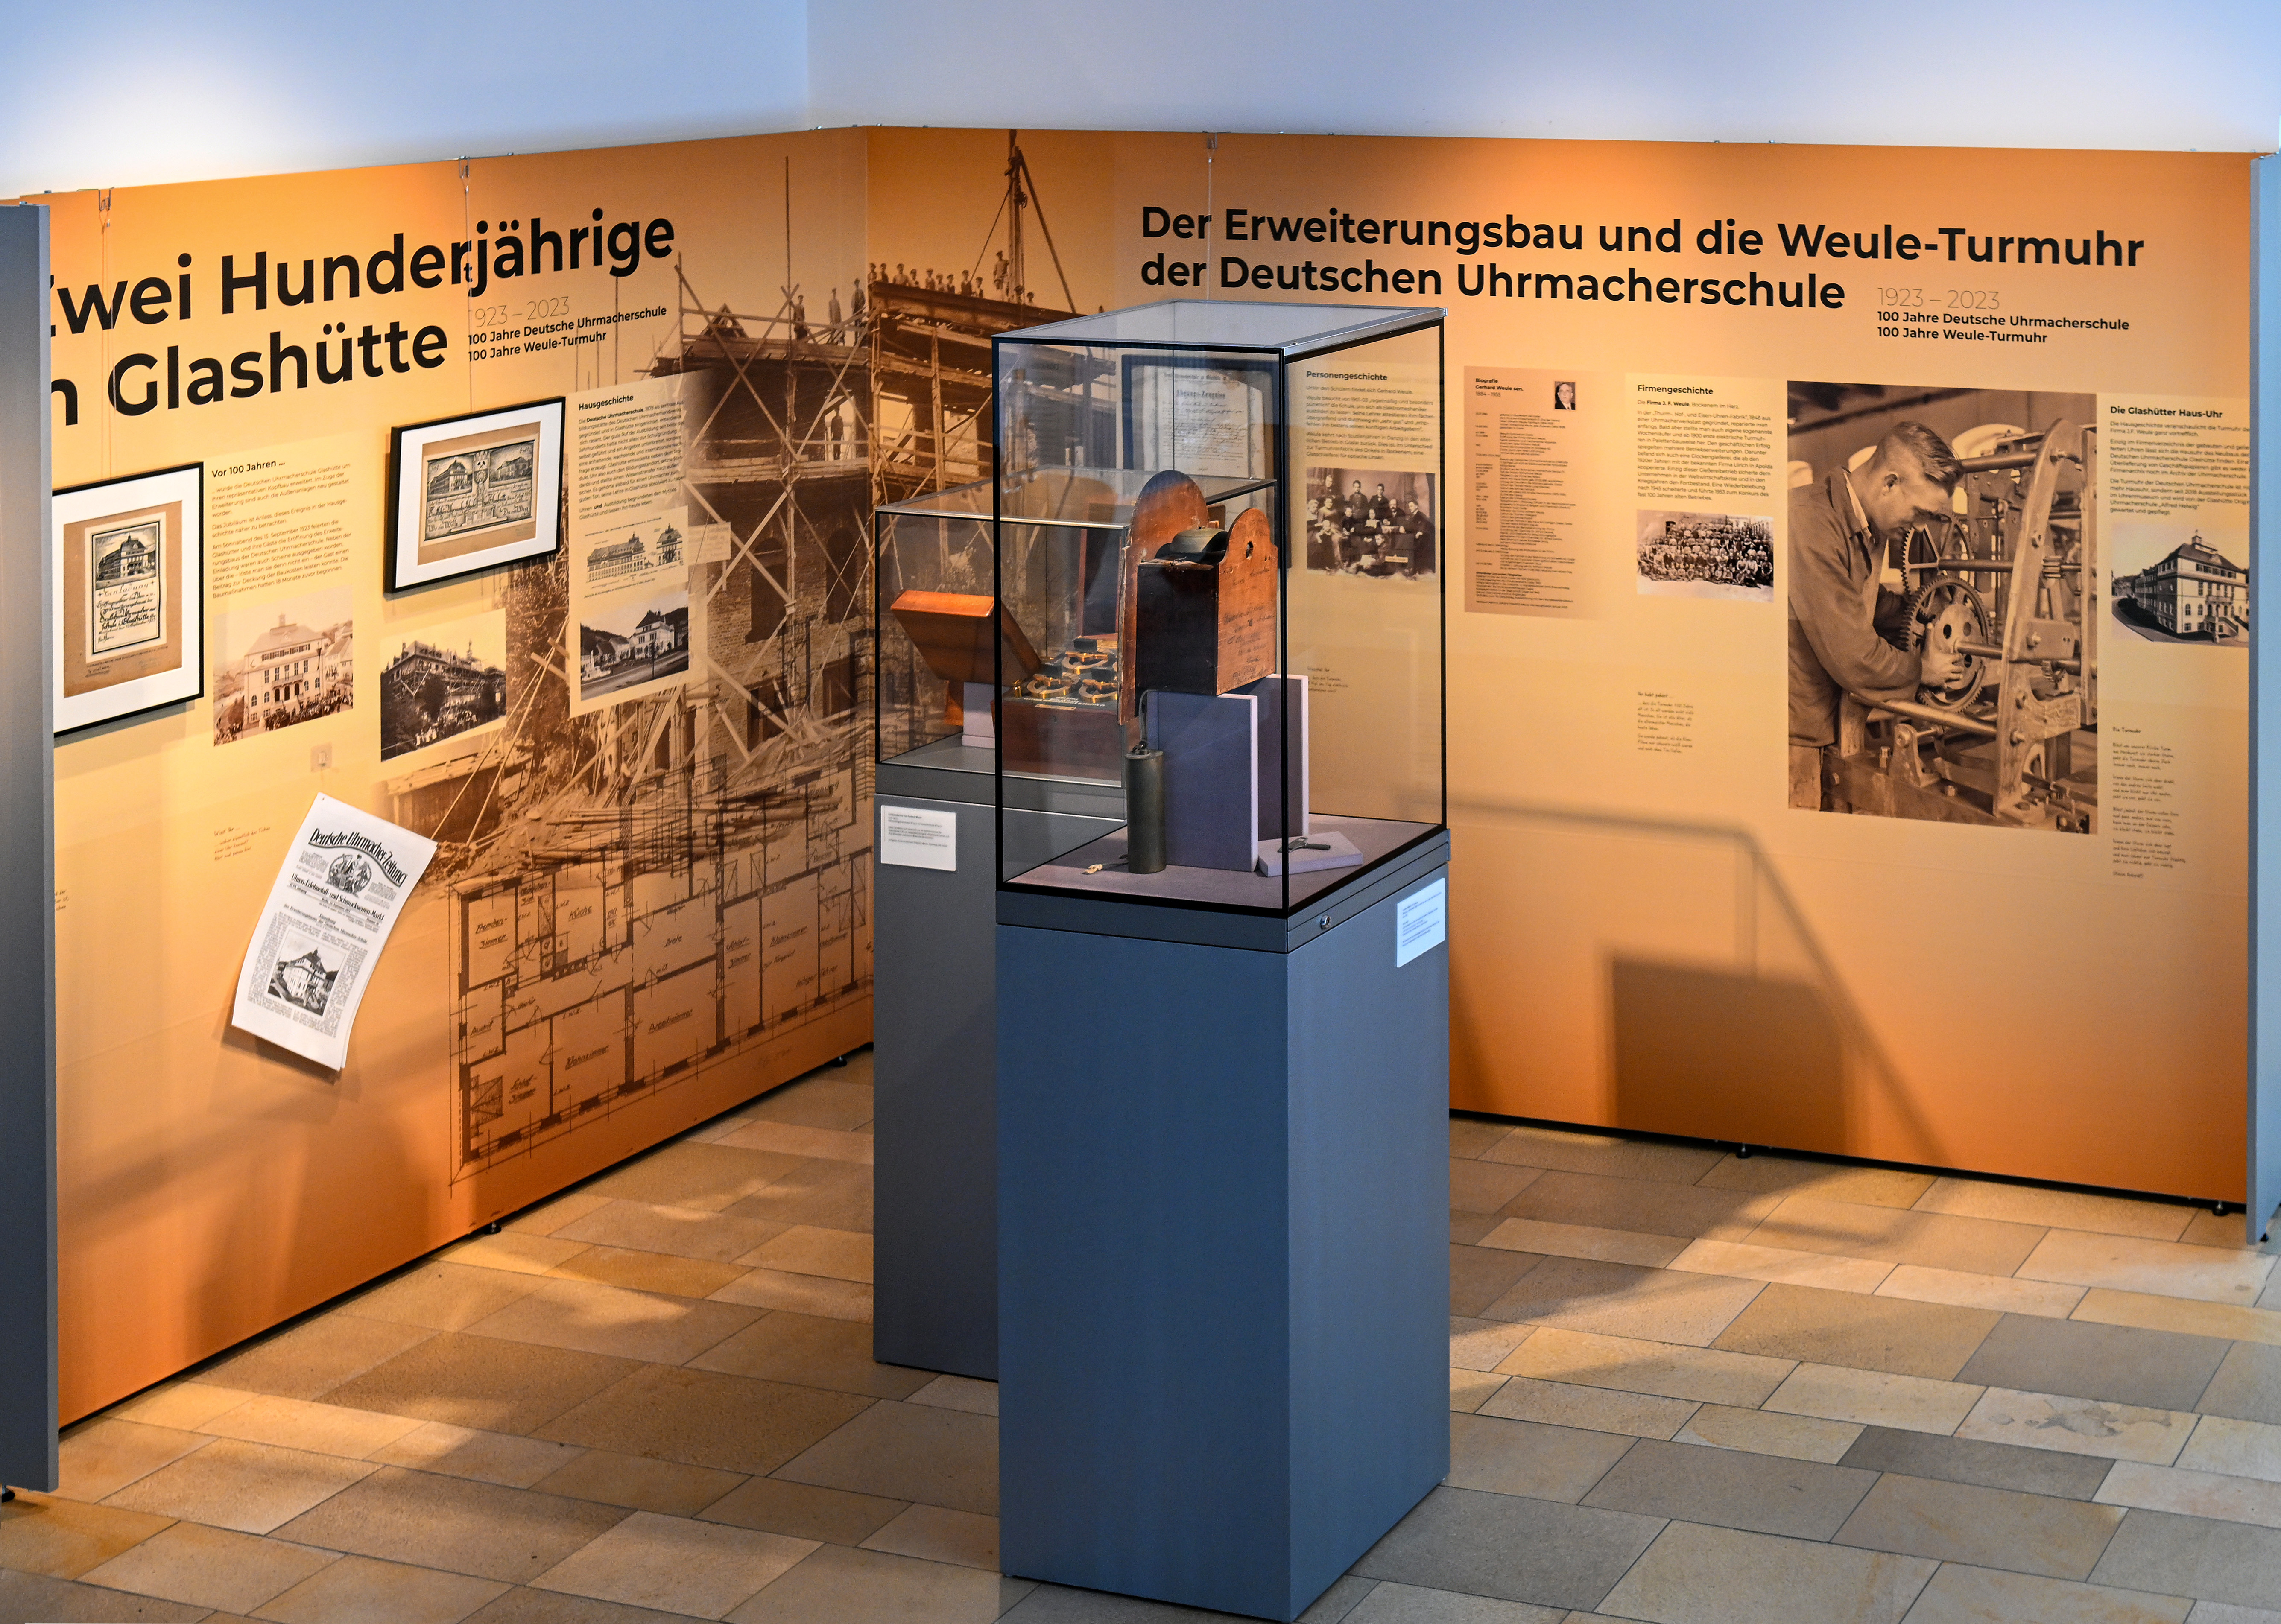 Gesamtbild der Foyer-Ausstellung mit zwei Ausstellungstafeln